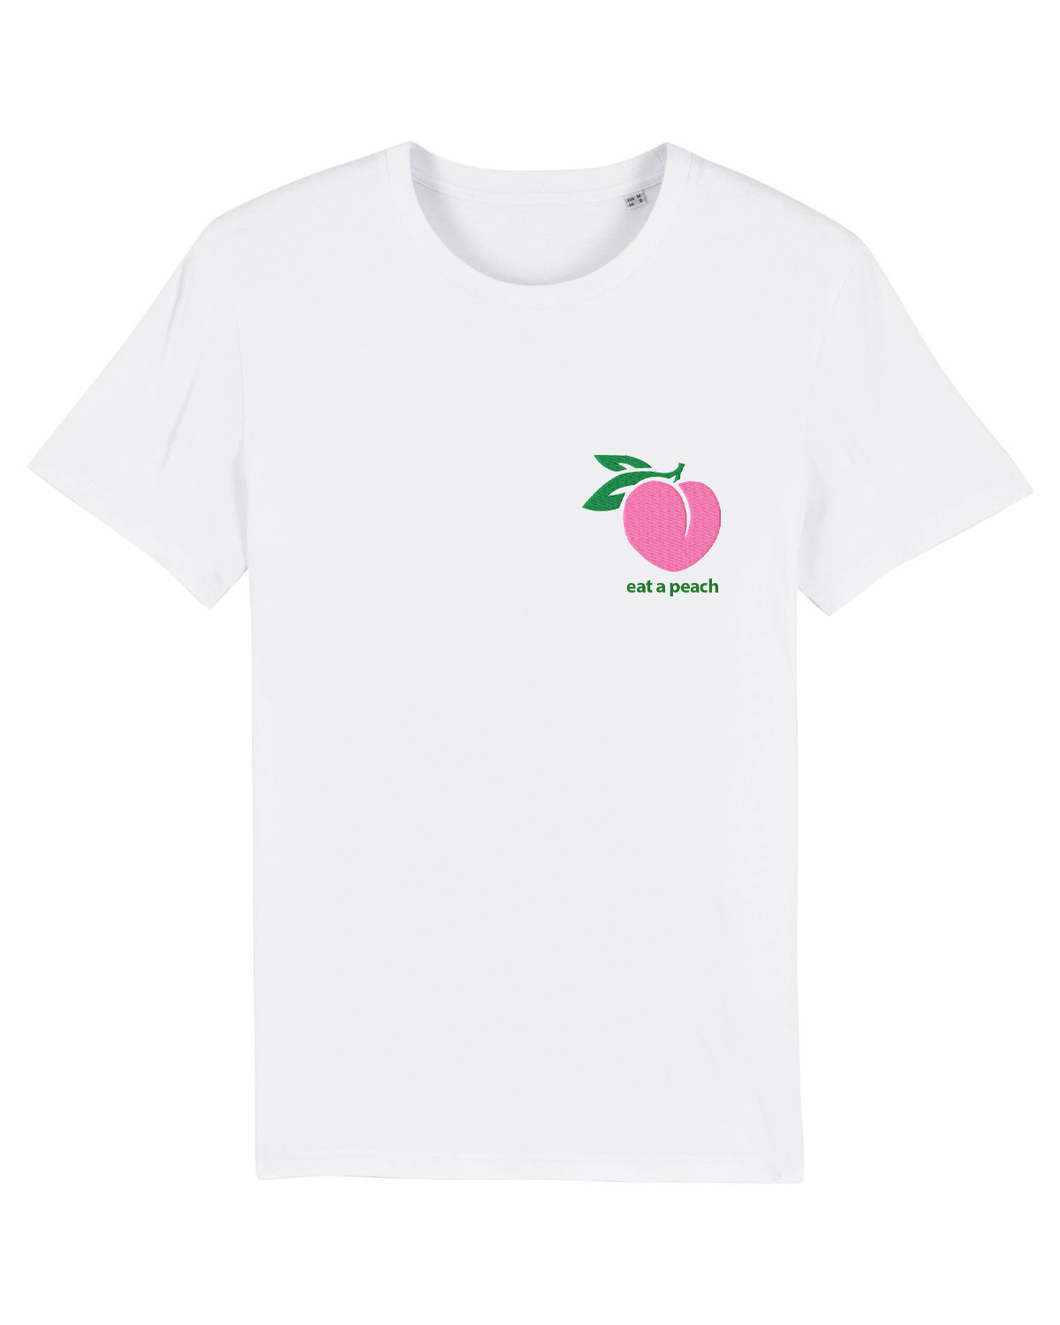 Eat a Peach - T-Shirt - White